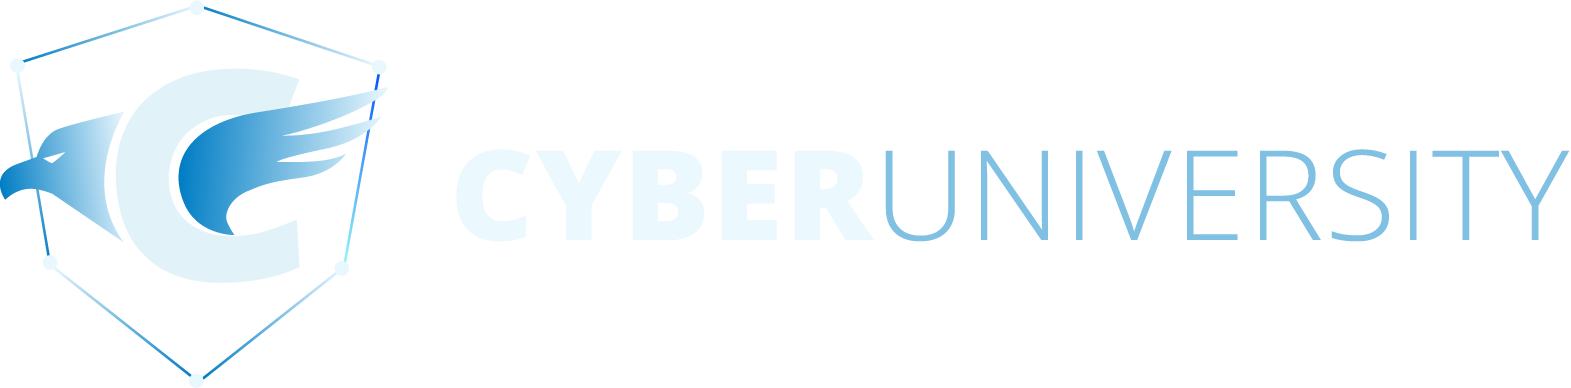 Logo CyberUniversity